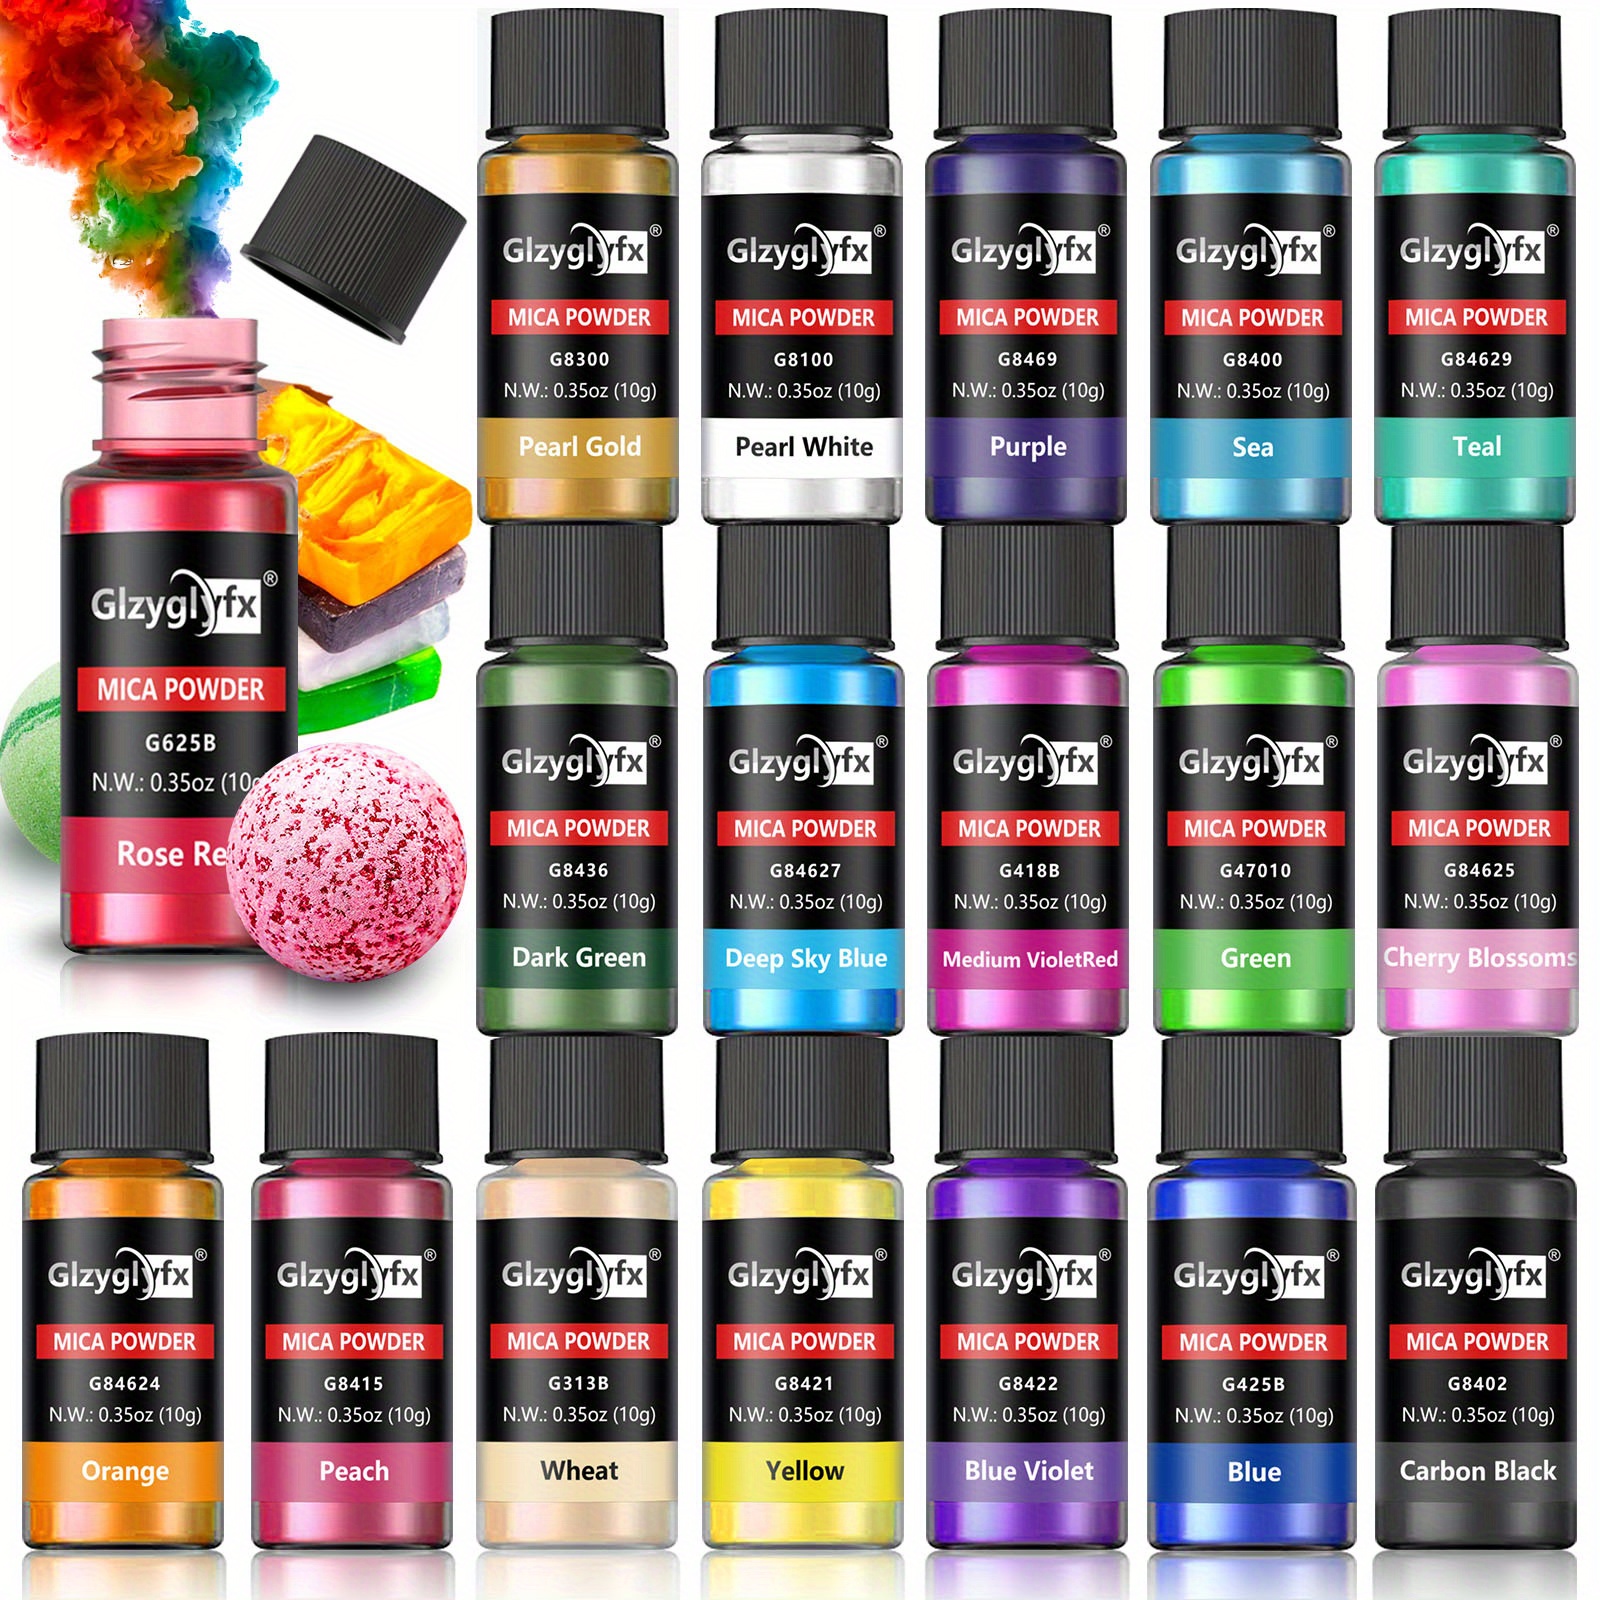 Polvo de mica para resina epoxi – 30 colores pigmentos en polvo de resina  tinte, polvo perlado natural de grado cosmético para pintura, fabricación  de